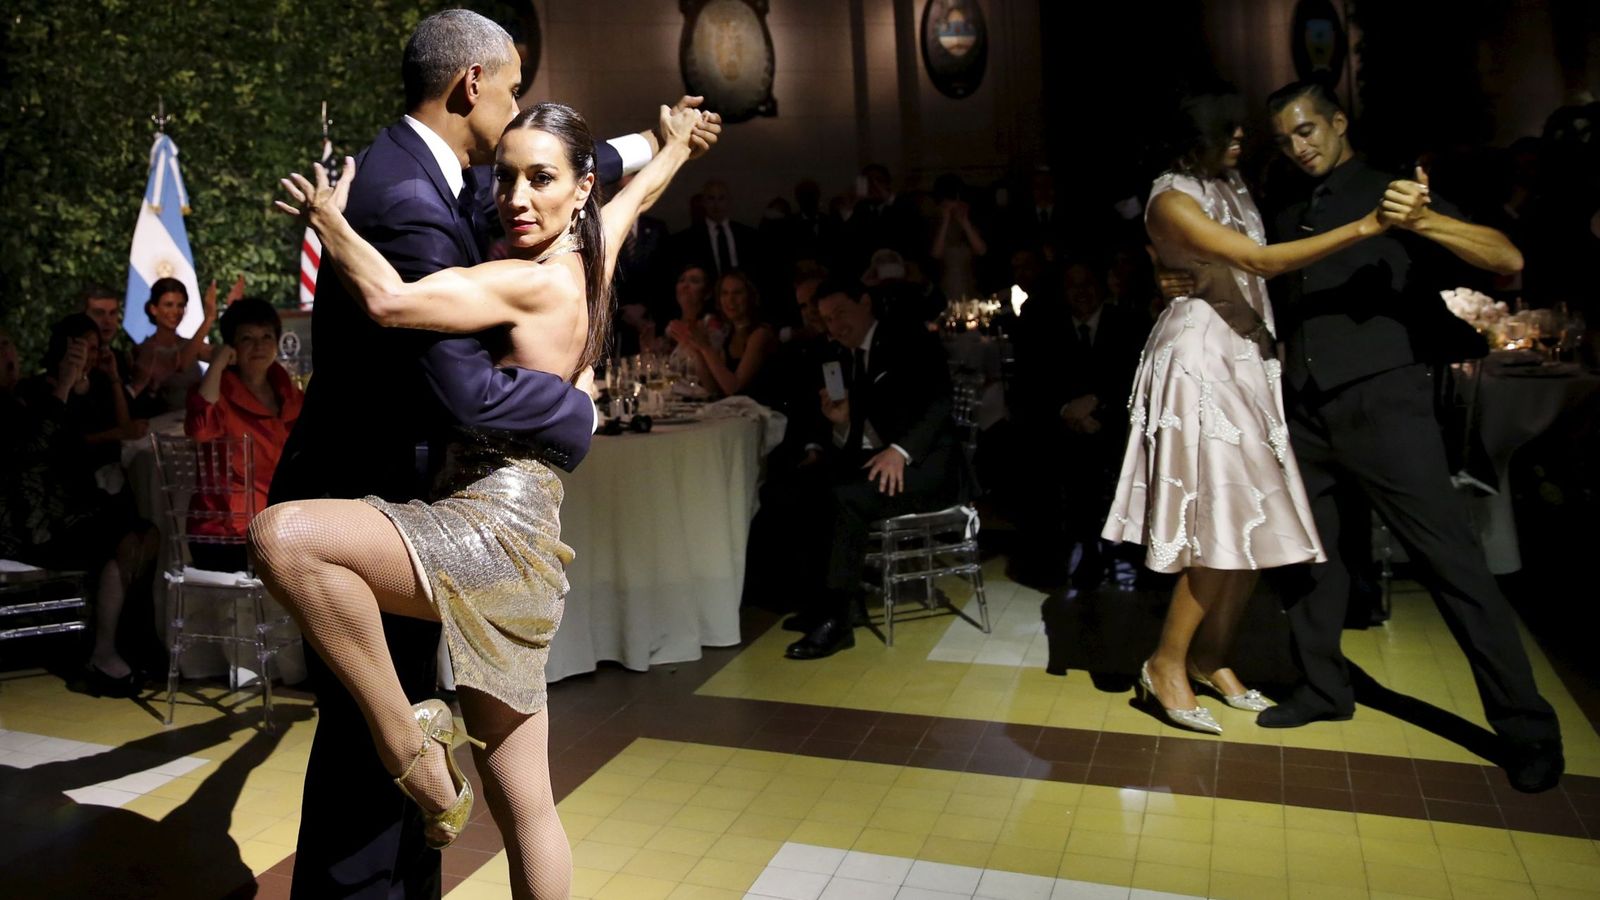 Foto: El matrimonio Obama se anima a bailar un tango en Buenos Aires. (Reuters)